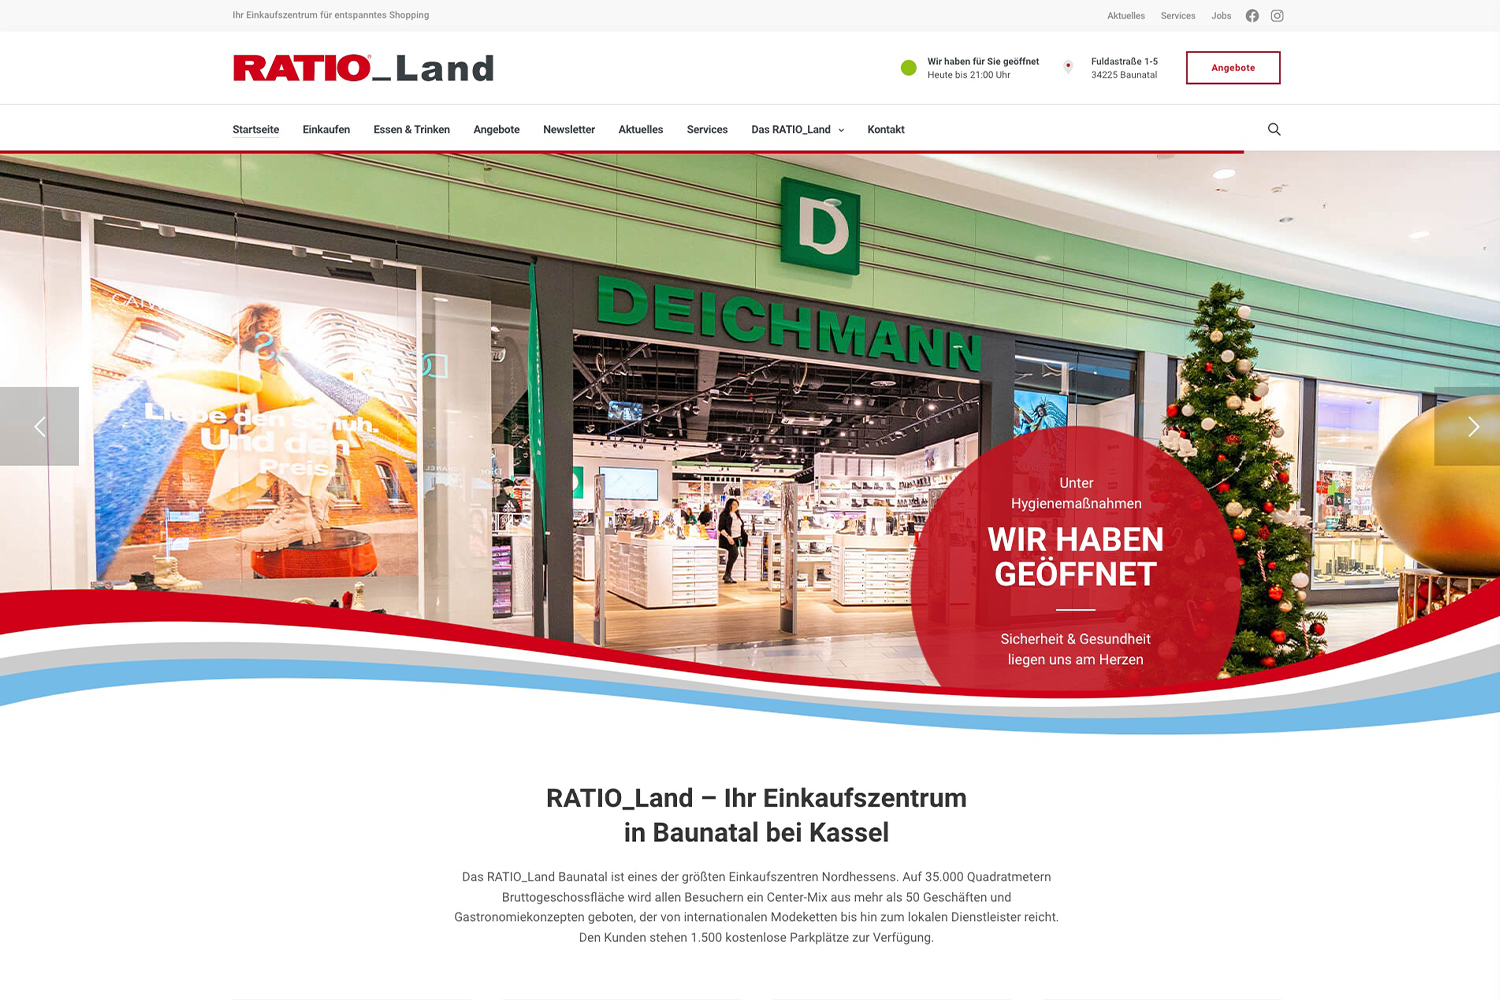 Startseite des Einkaufszentrum RATIO_Land